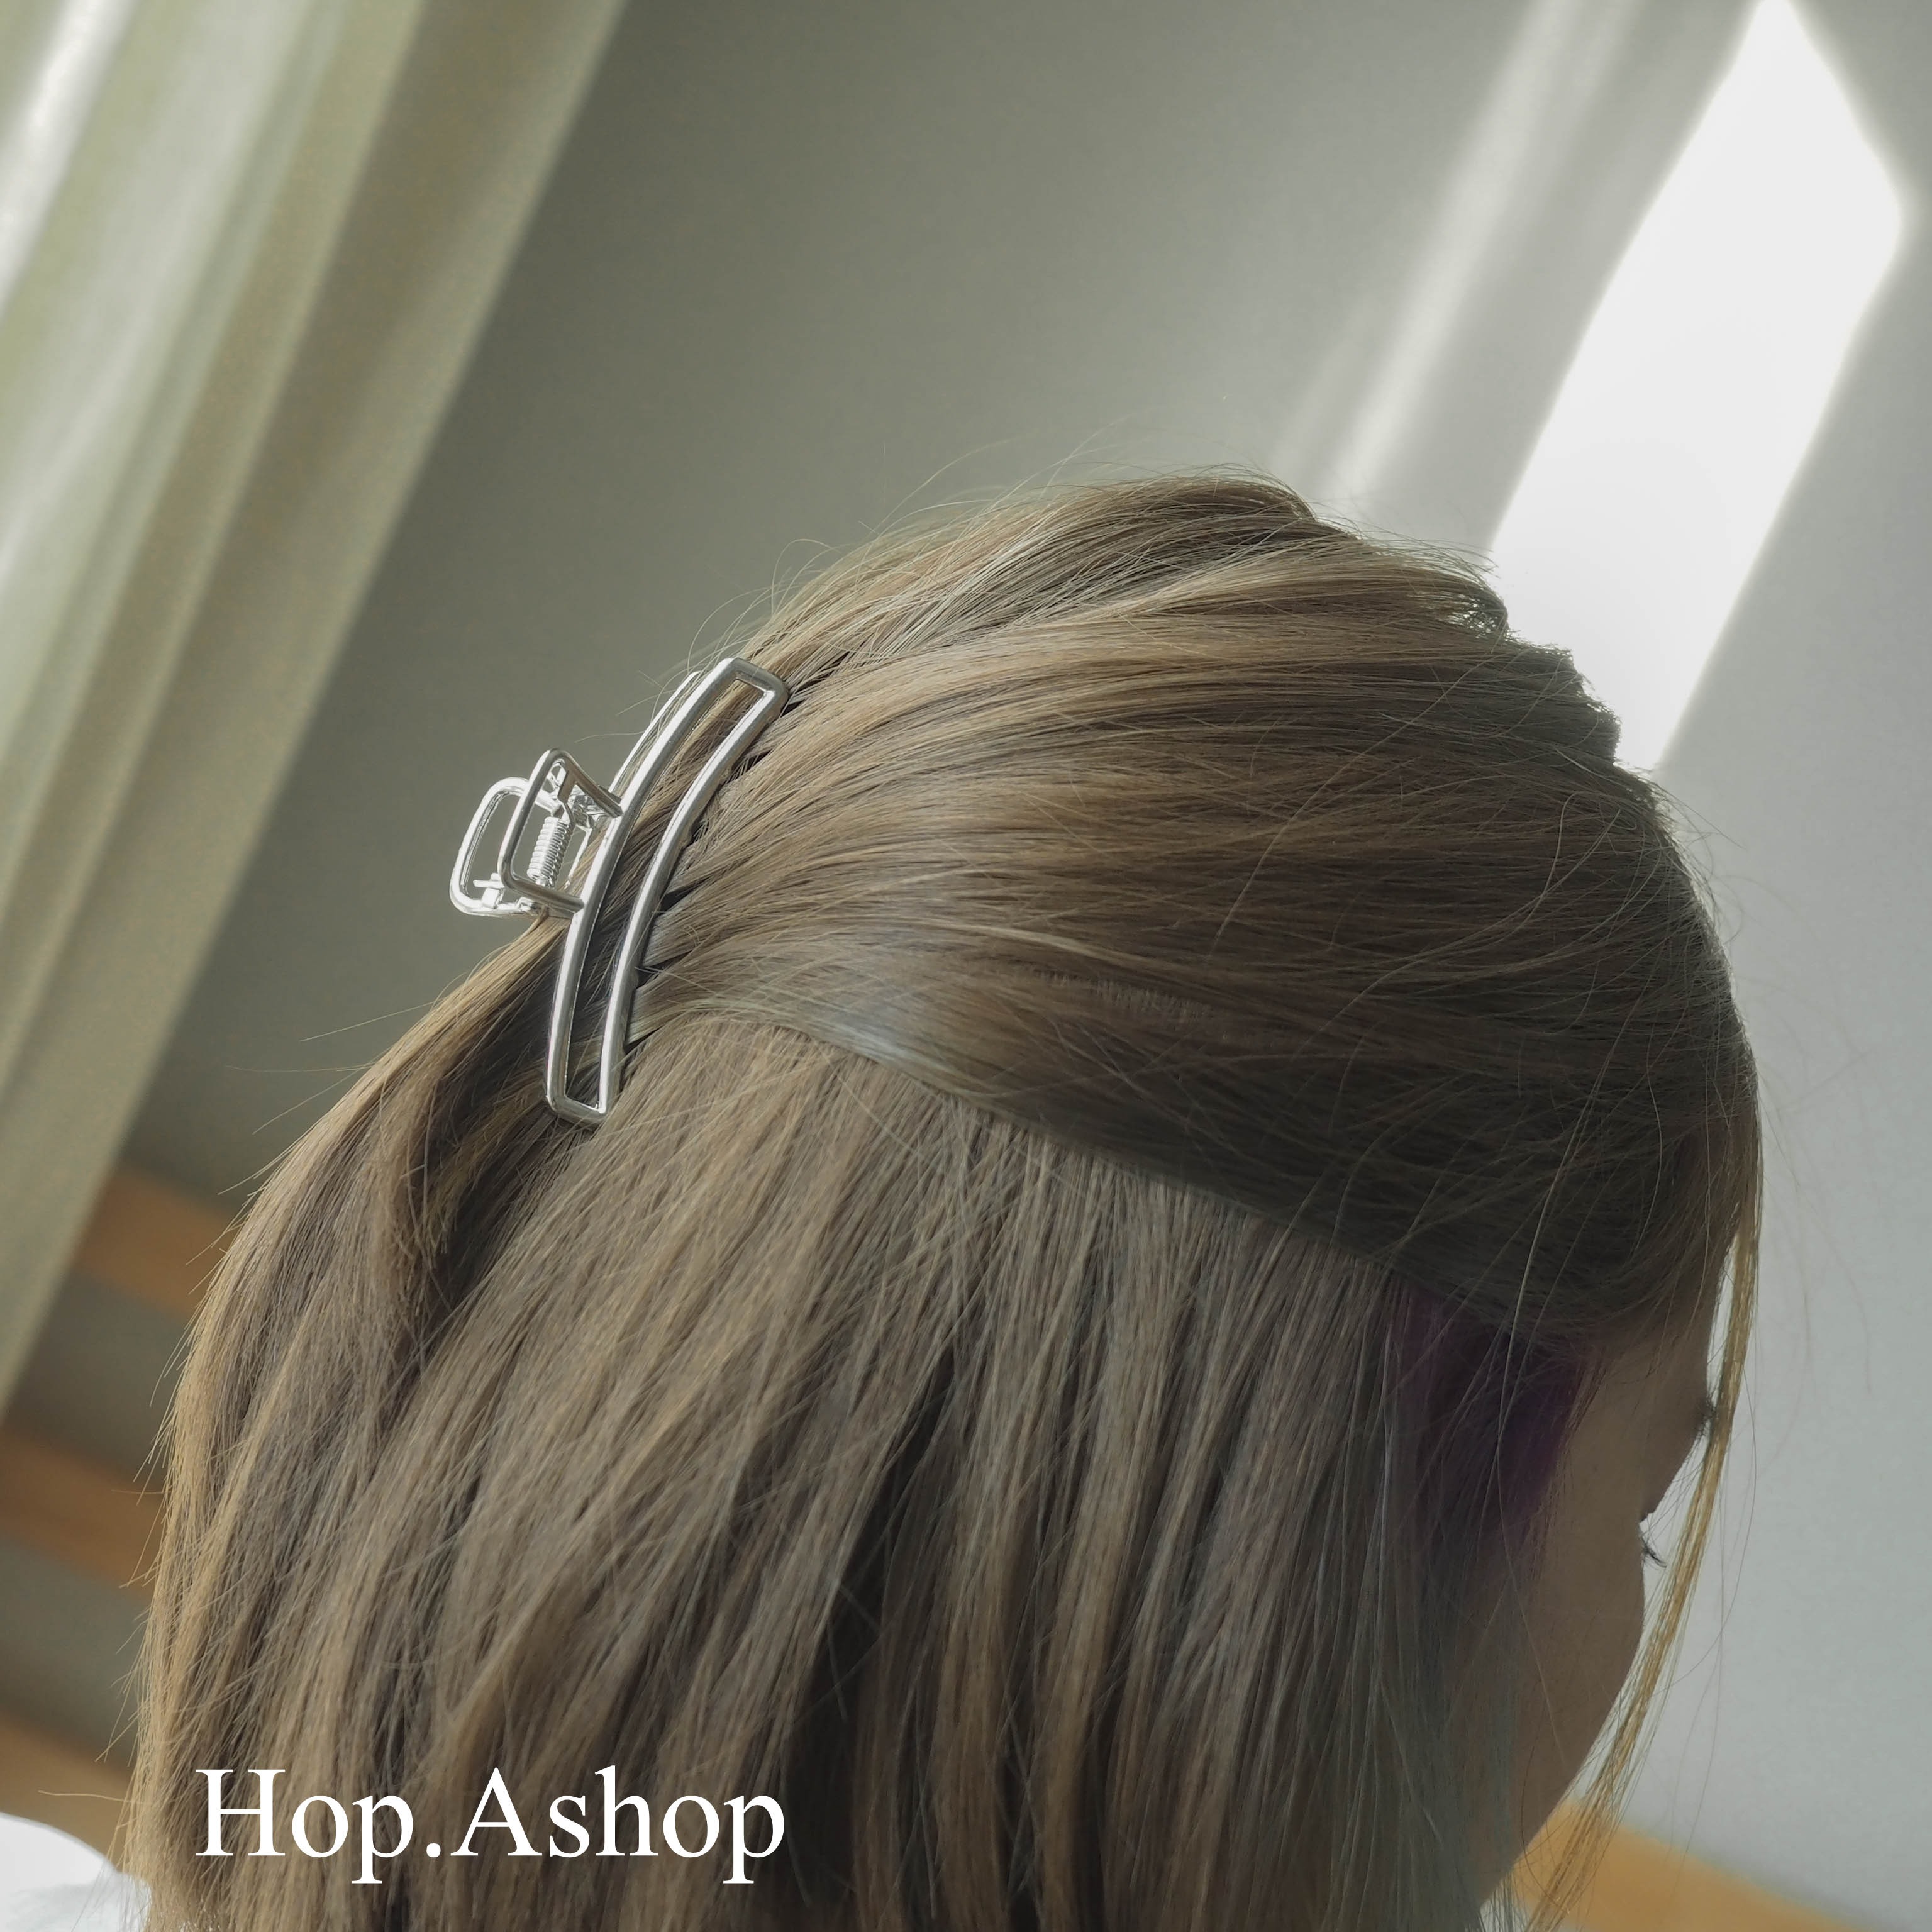 กิ๊บหนีบผมสไตล์เกาหลี กิ๊บสีทอง กิ๊ฟทอง กิ๊บเหล็ก Bronze Clip รุ่นขายดี กิ๊บติดผม กิ๊บติดผมแฟชั่น สำหรับผู้หญิง Korean Style Hair Clip | Hop.Ashop